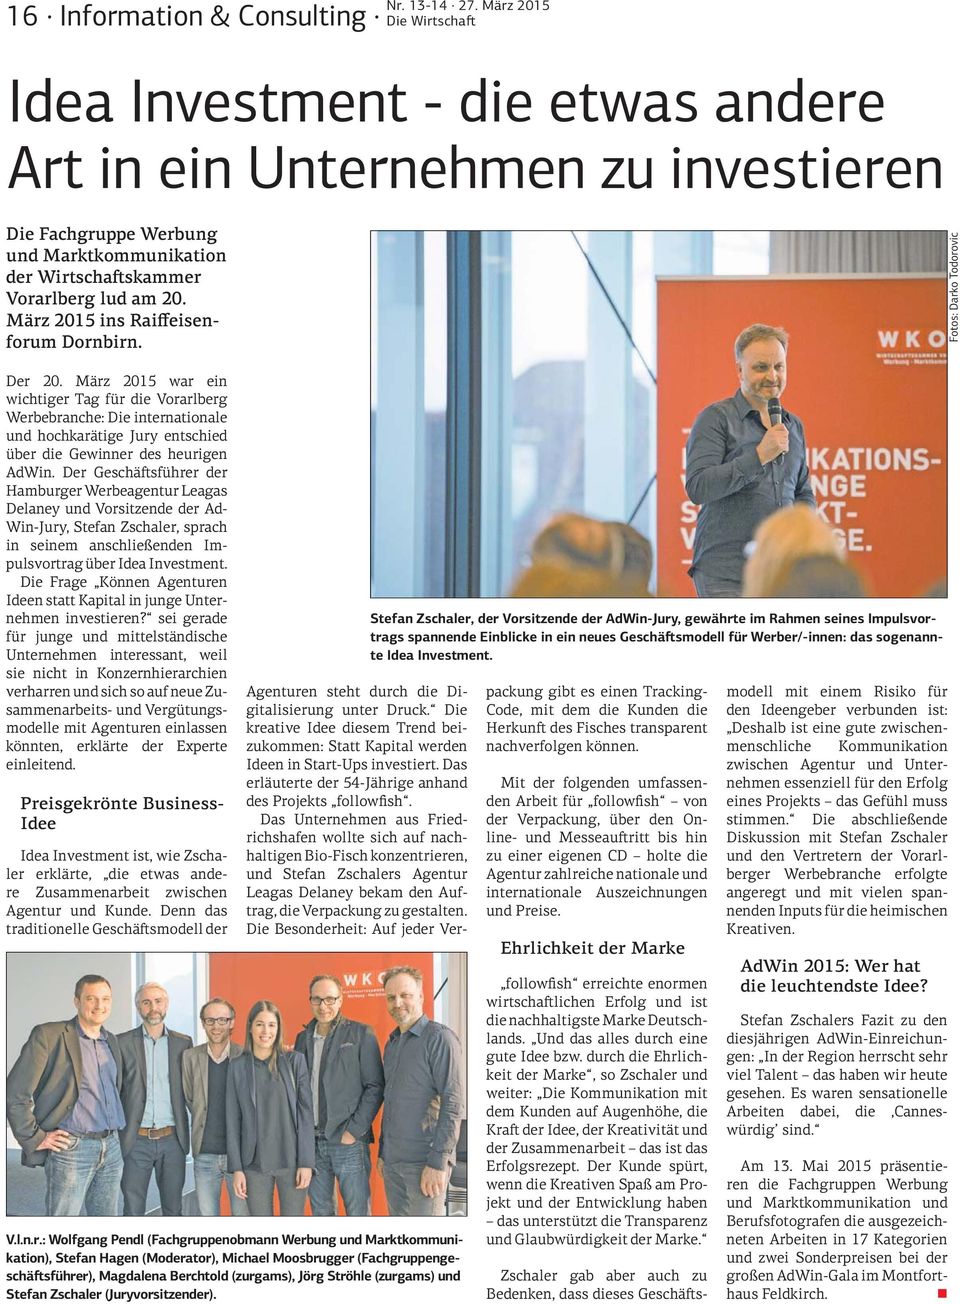 März 2015 war ein wichtiger Tag für die Vorarlberg Werbebranche: Die internationale und hochkarätige Jury entschied über die Gewinner des heurigen AdWin.